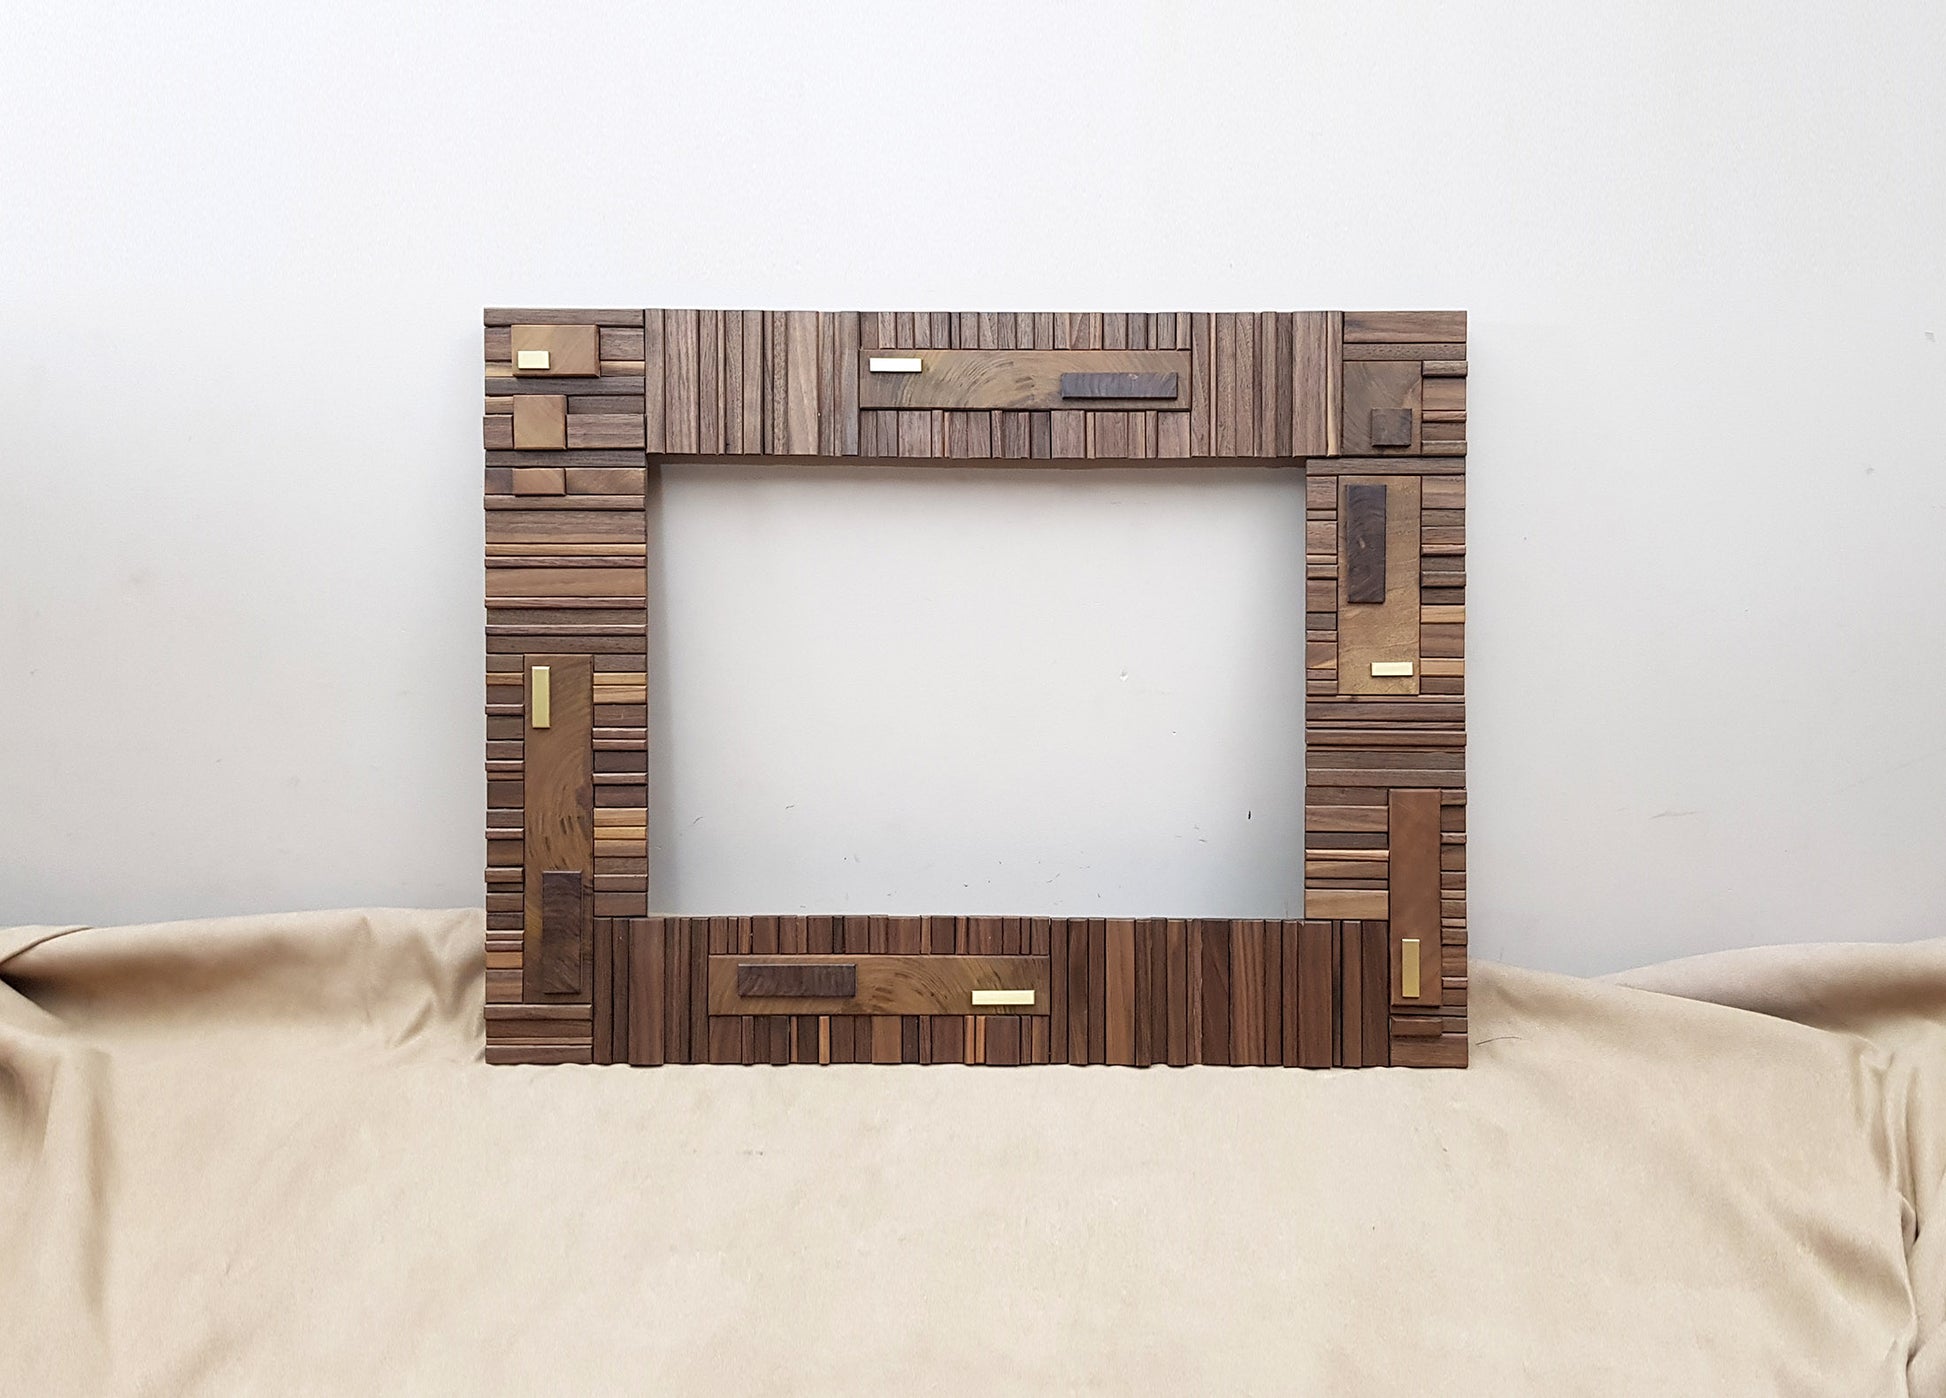 Handmade centrepiece statement mirror frame in walnut and brass